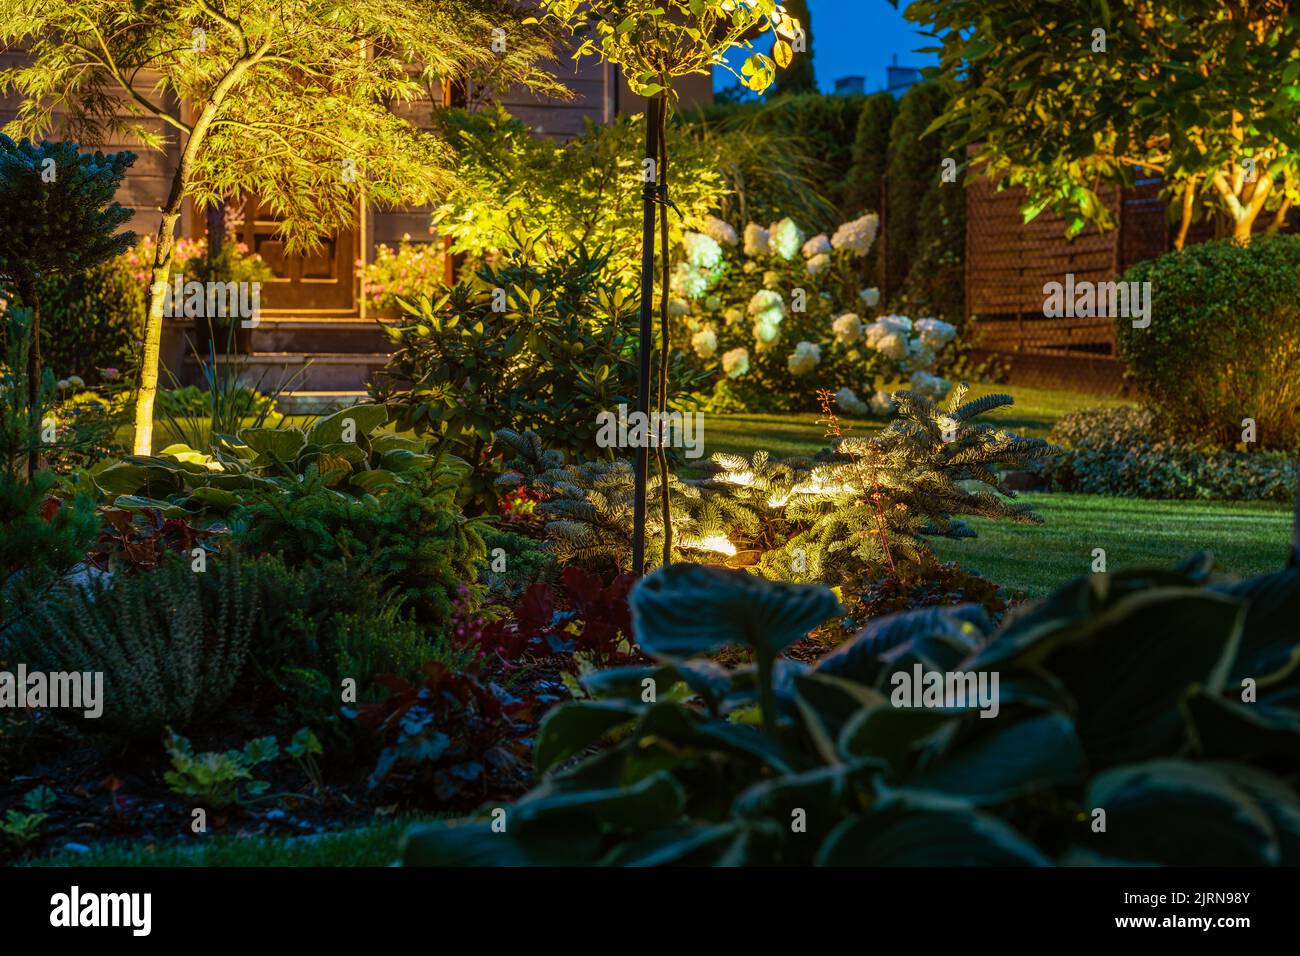 Lumières À DEL illuminées petit jardin de jardin de nuit. Plantes de rockery, arbres décoratifs et fleurs. Banque D'Images